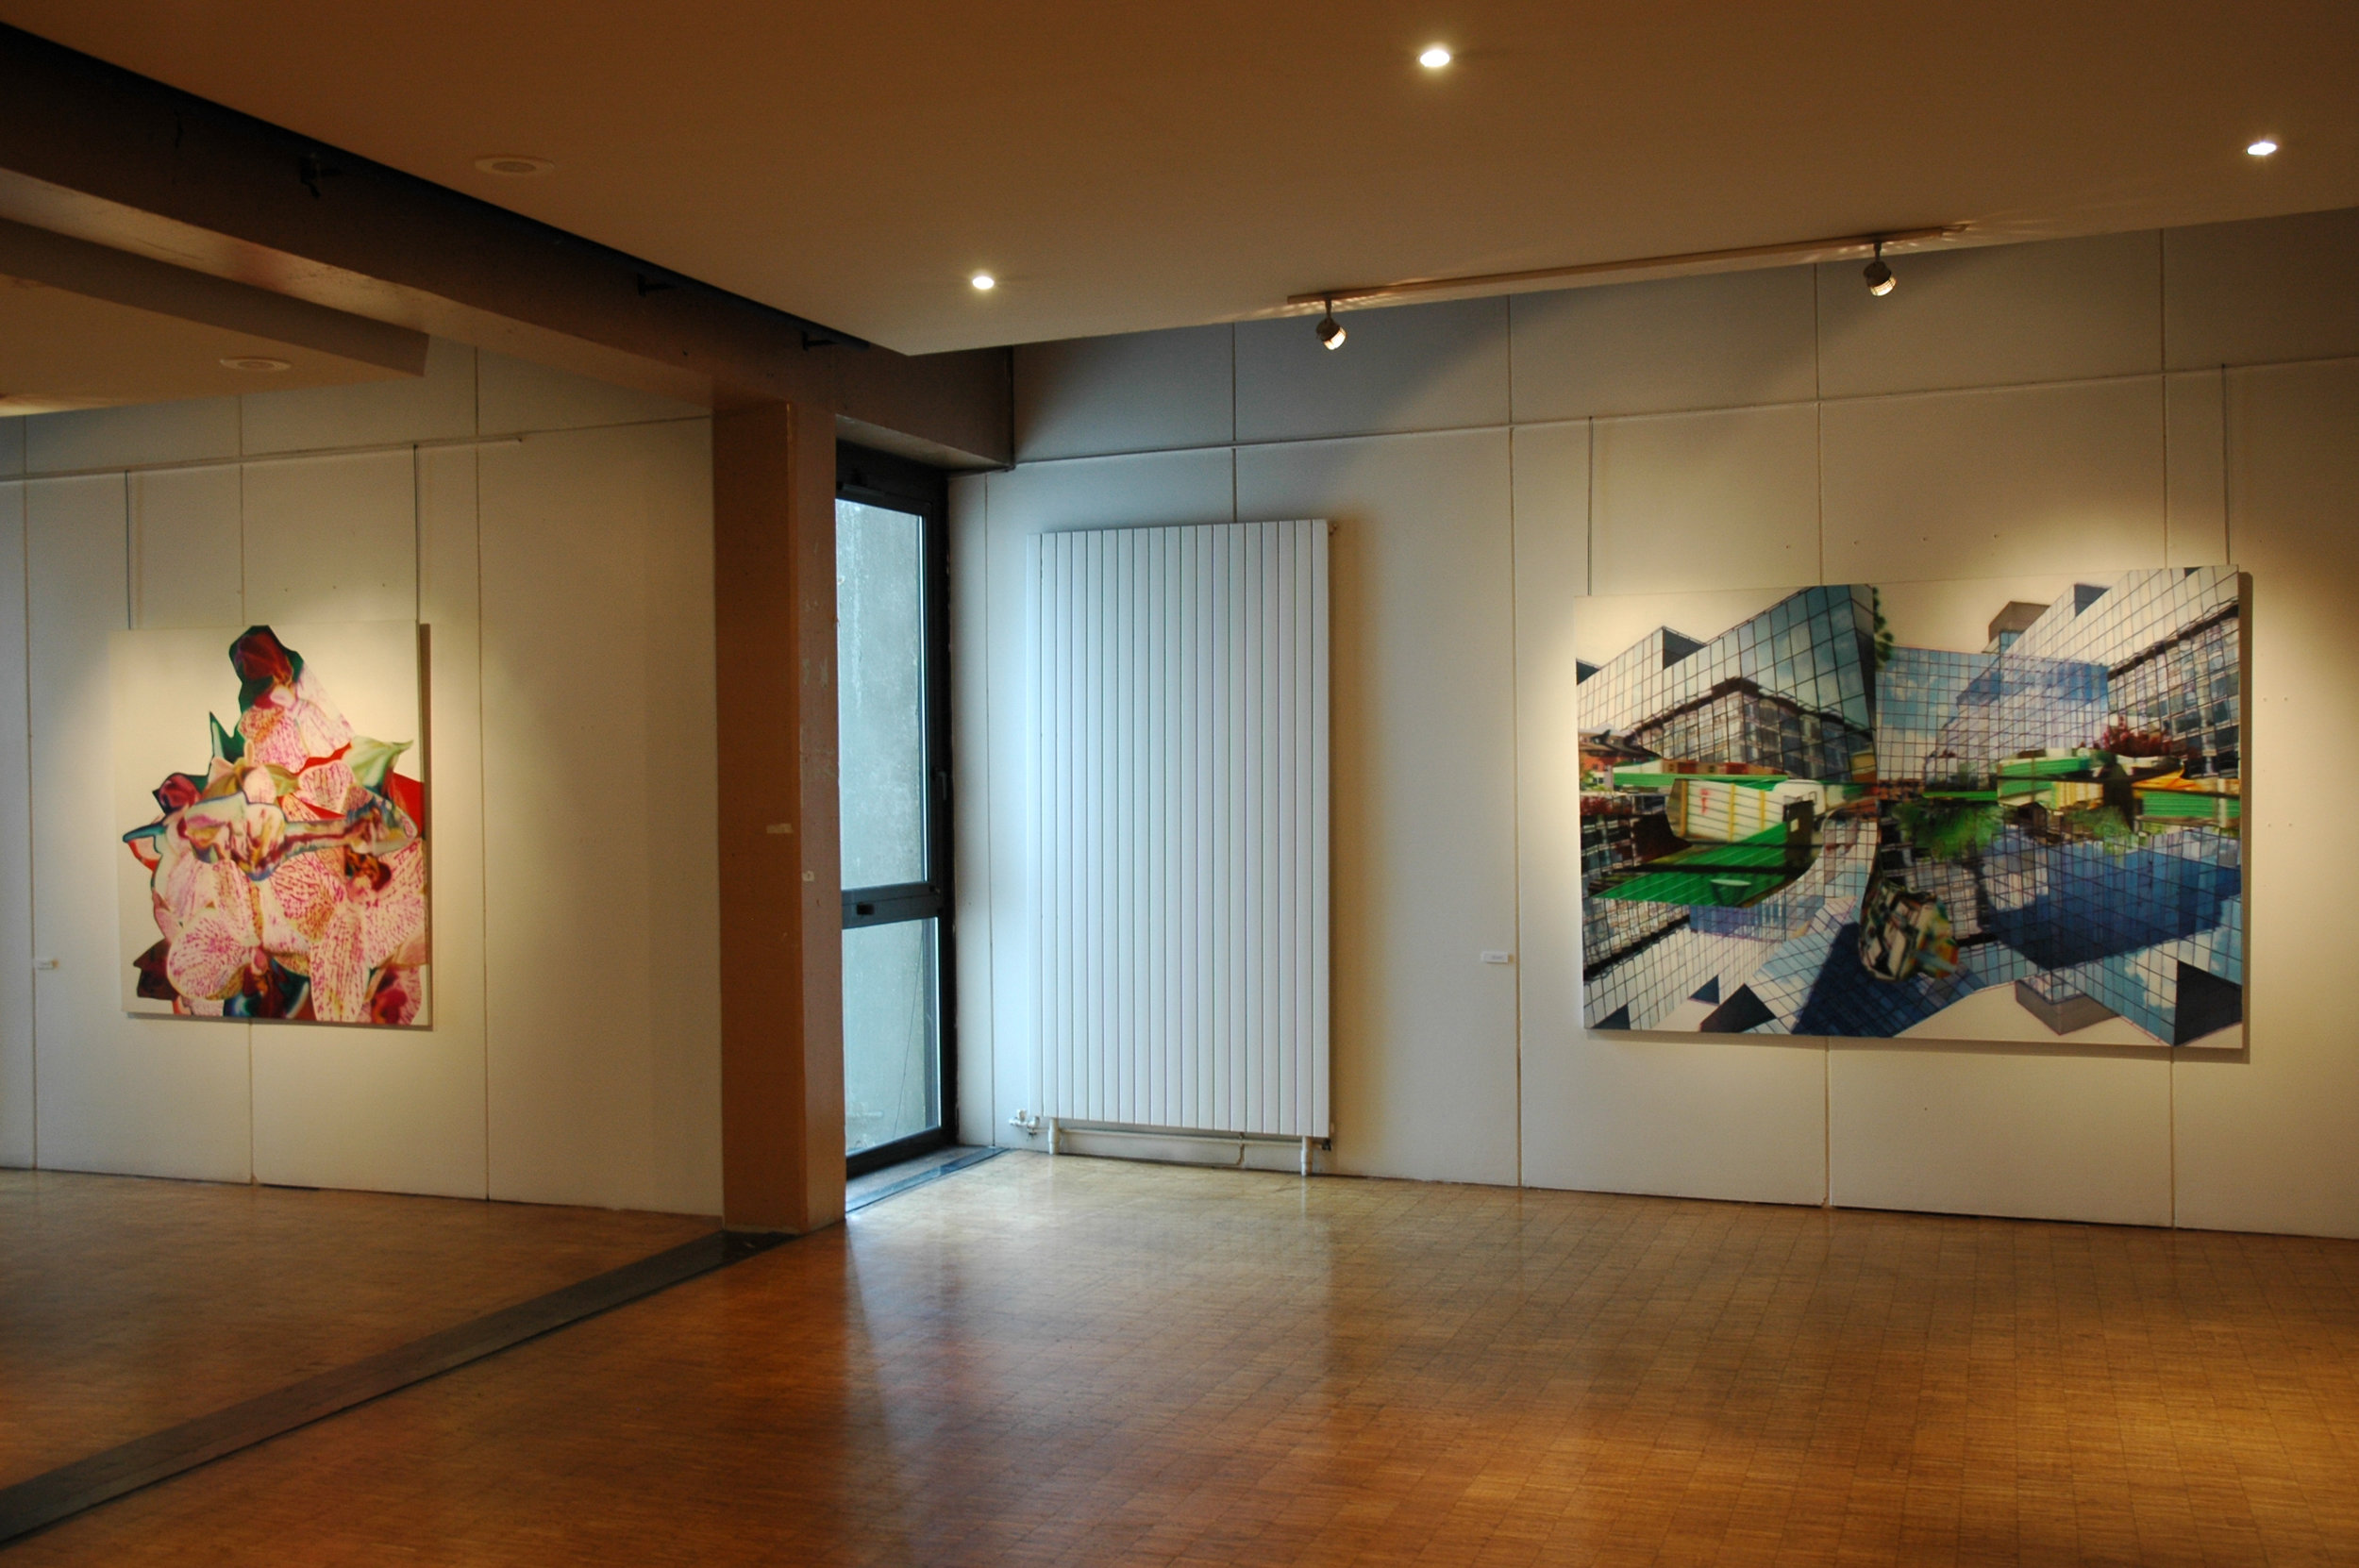   Duncan Wylie,  &nbsp;Maison des Arts de Créteil (FR), 2005  